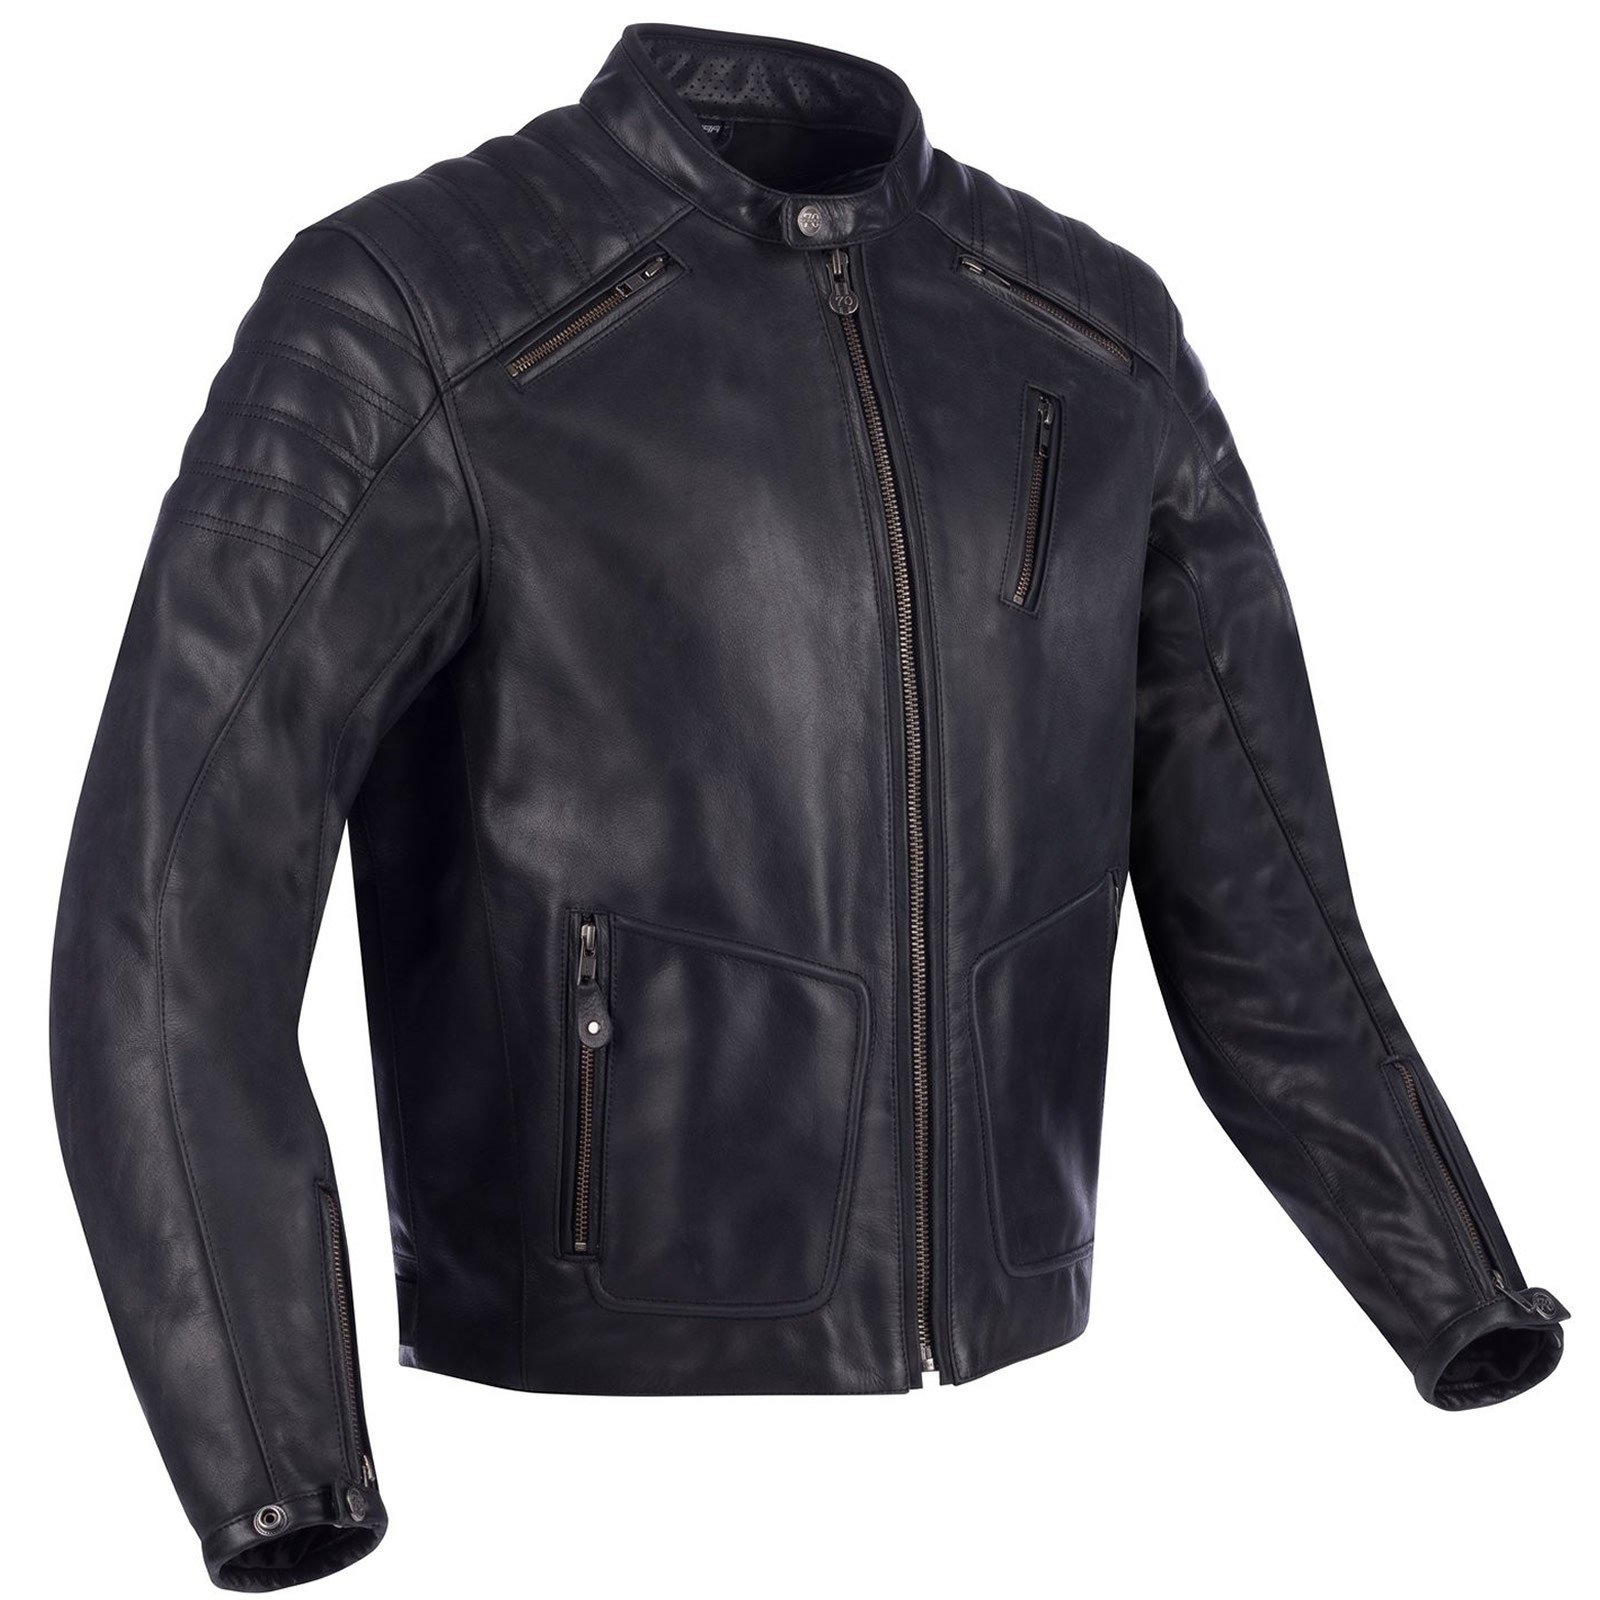 Image of Segura Angus Jacket Black Size XL ID 3660815166246